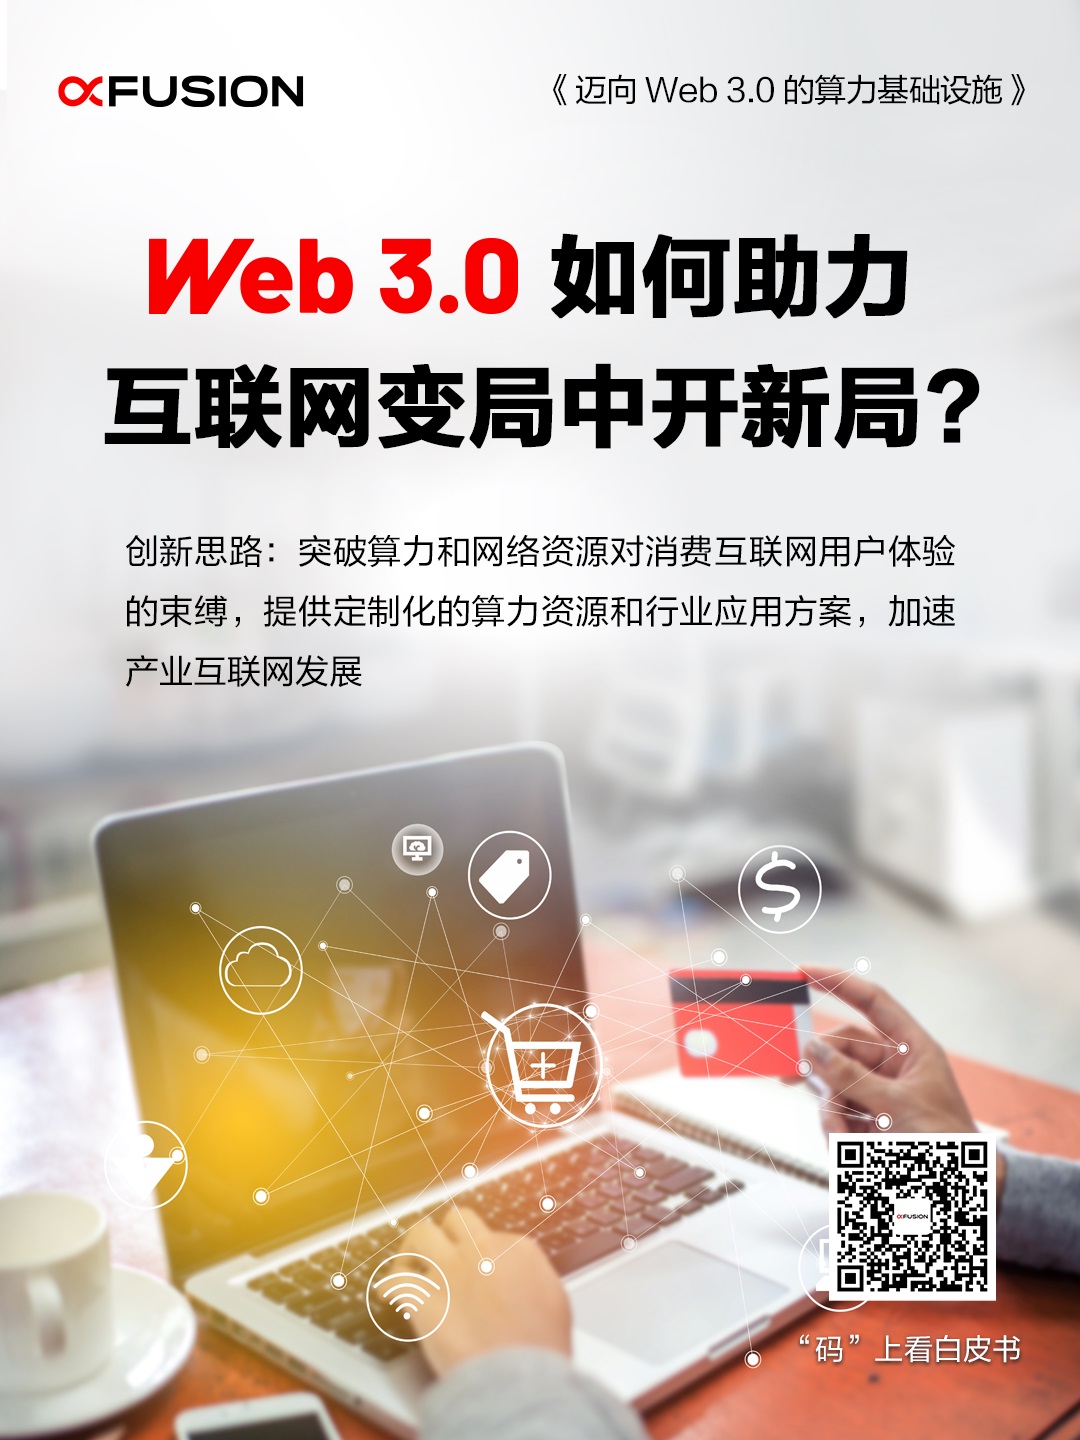 Web 3.0如何助力互联网变局中开新局？